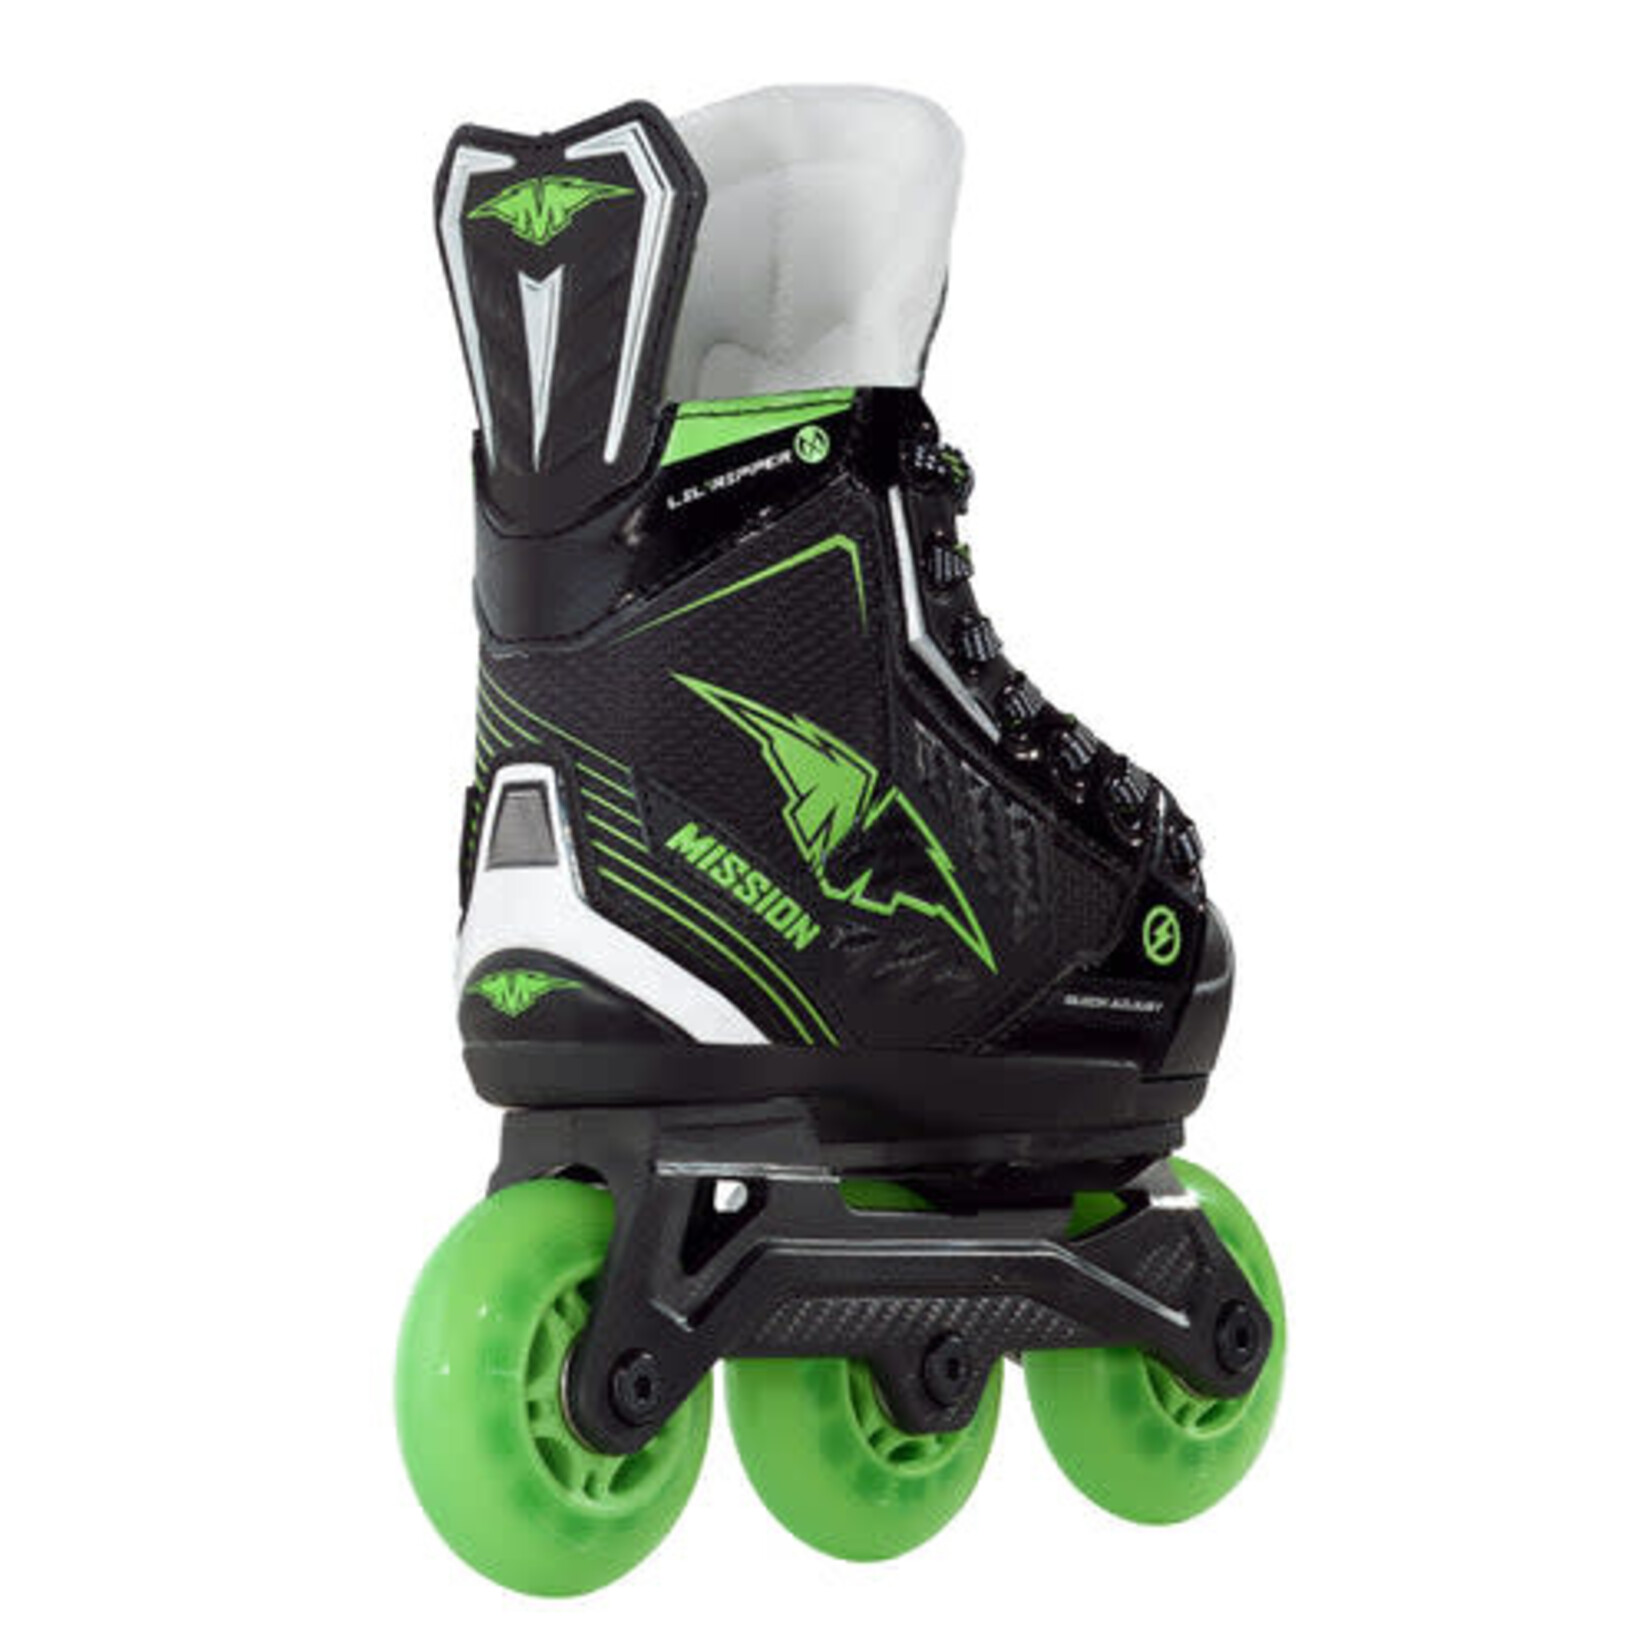 Mission Roller Hockey Skates, Lil' Ripper Adjustable, Junior 2-5